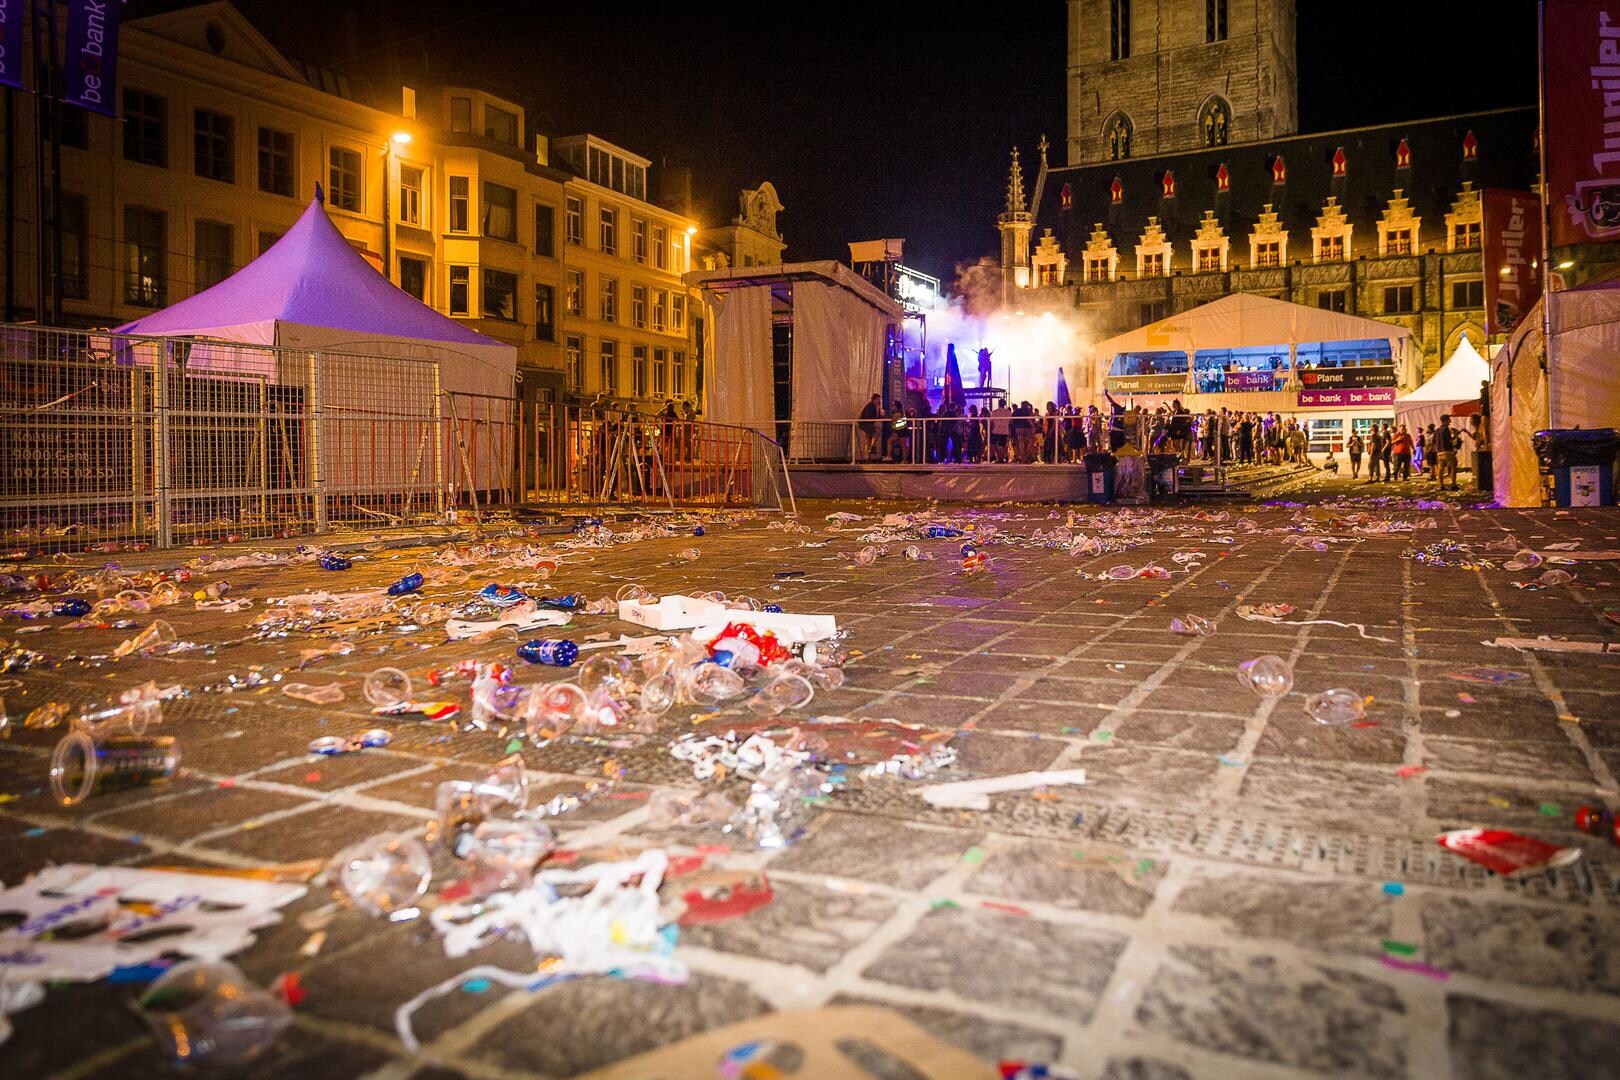 Drukke laatste avond van Gentse Feesten voor politie: "Na tien dagen zijn mensen blijkbaar wat prikkelbaarder"